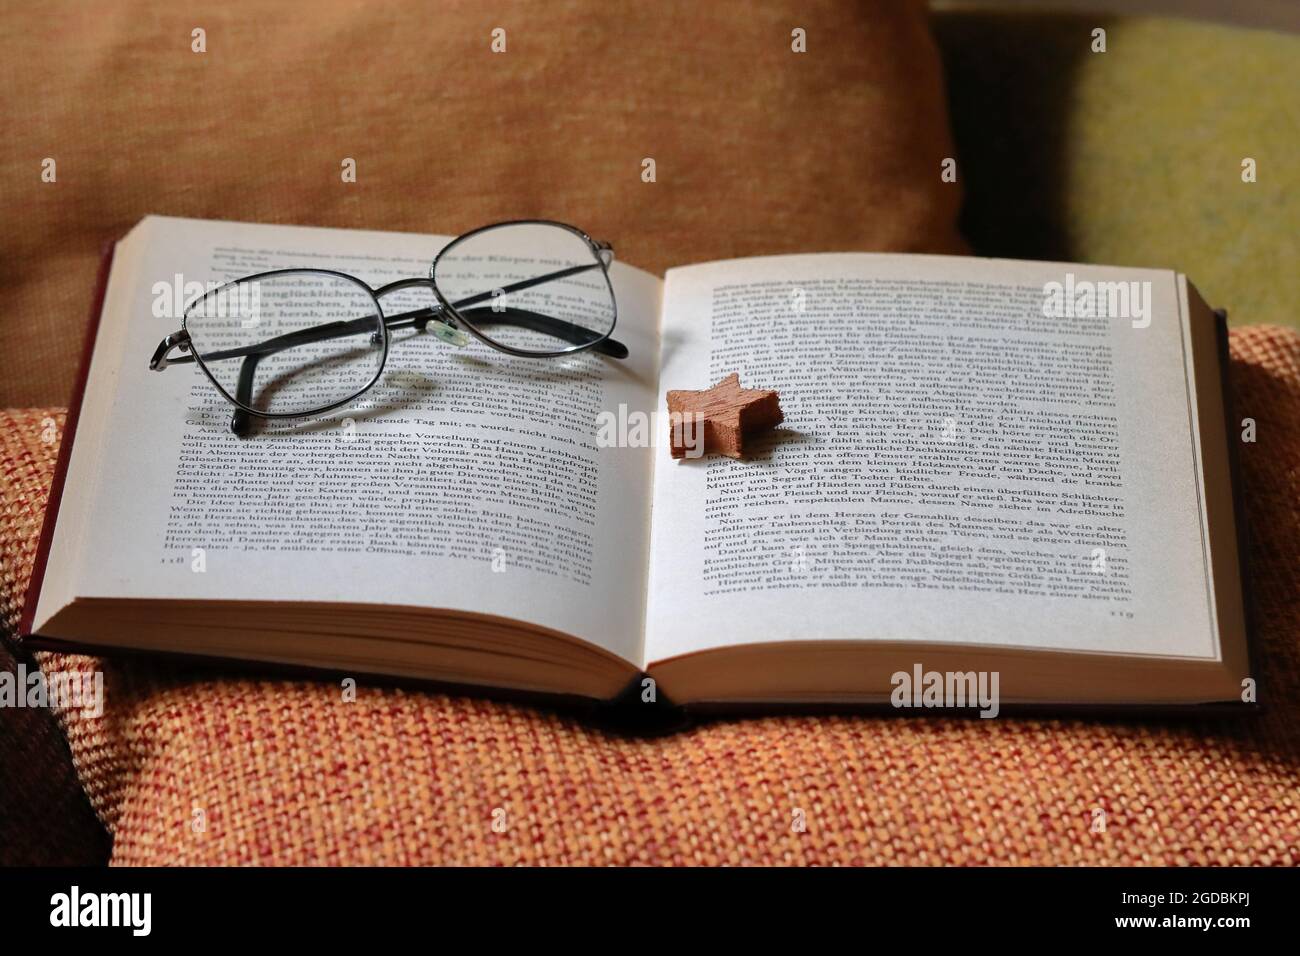 ein aufgeschlagenes Buch liegt zusammen mit einem Holzstern als Lesezeichen und einer Brille auf einem orangenen Kissen Stock Photo